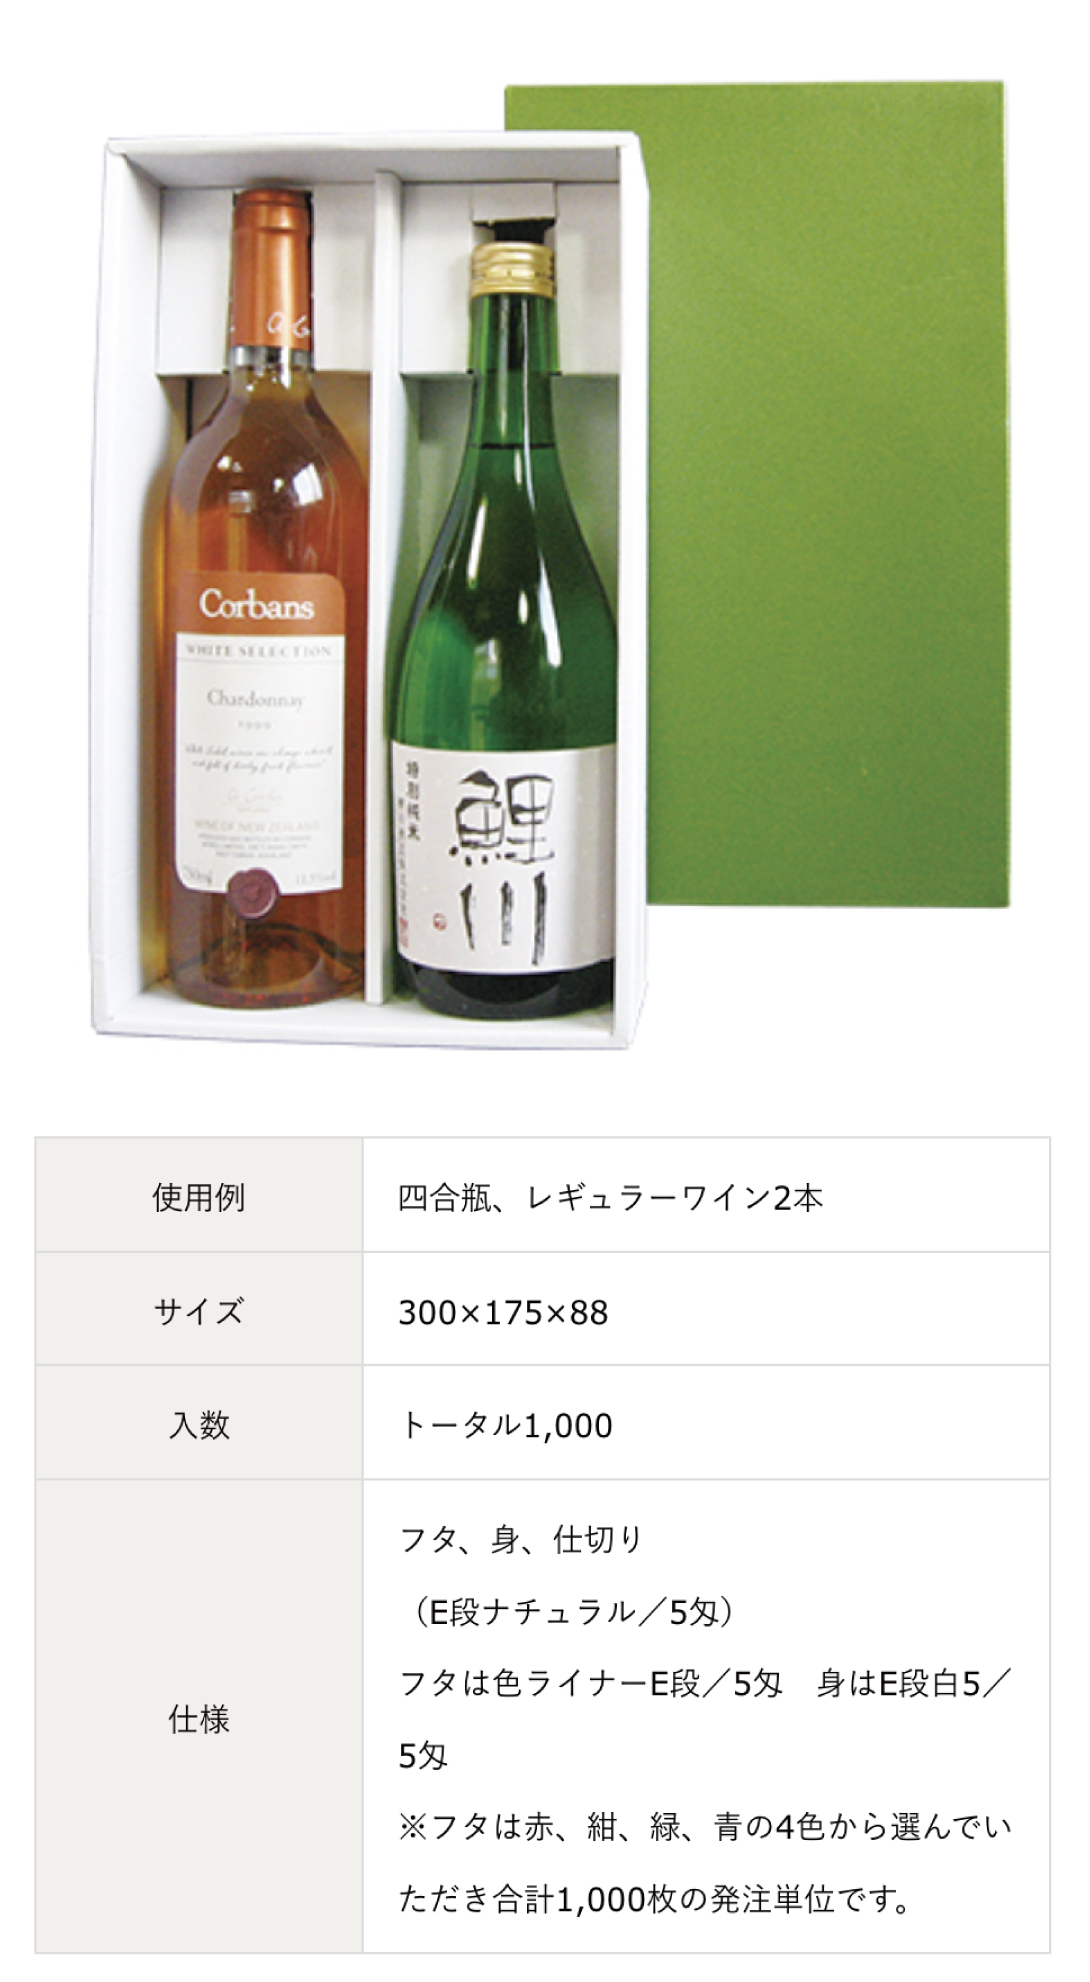 レギュラーワイン用、日本酒・ワイン・ウィスキー・ビール・シャンパンなどの既製サイズの箱